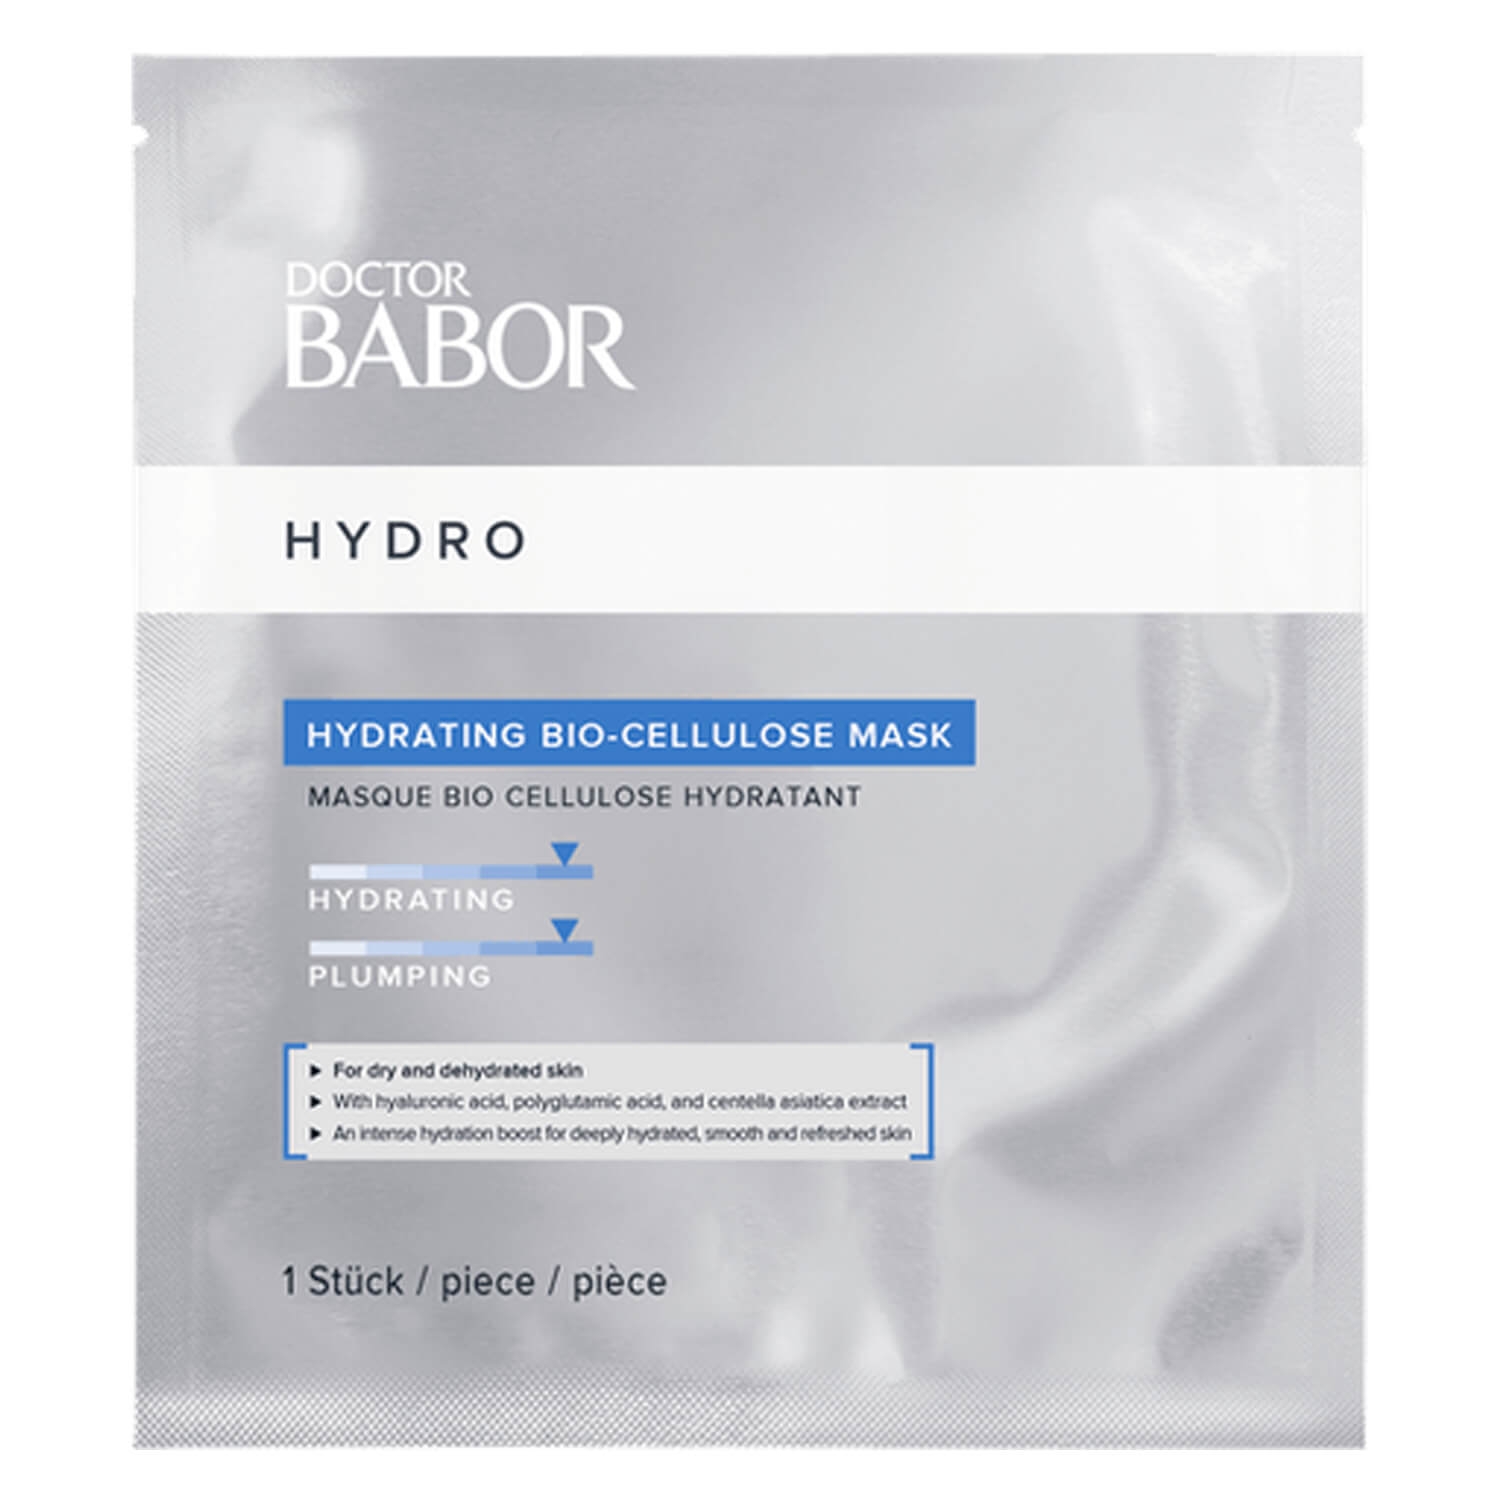 Produktbild von DOCTOR BABOR - Hydrating Bio-Cellulose Mask